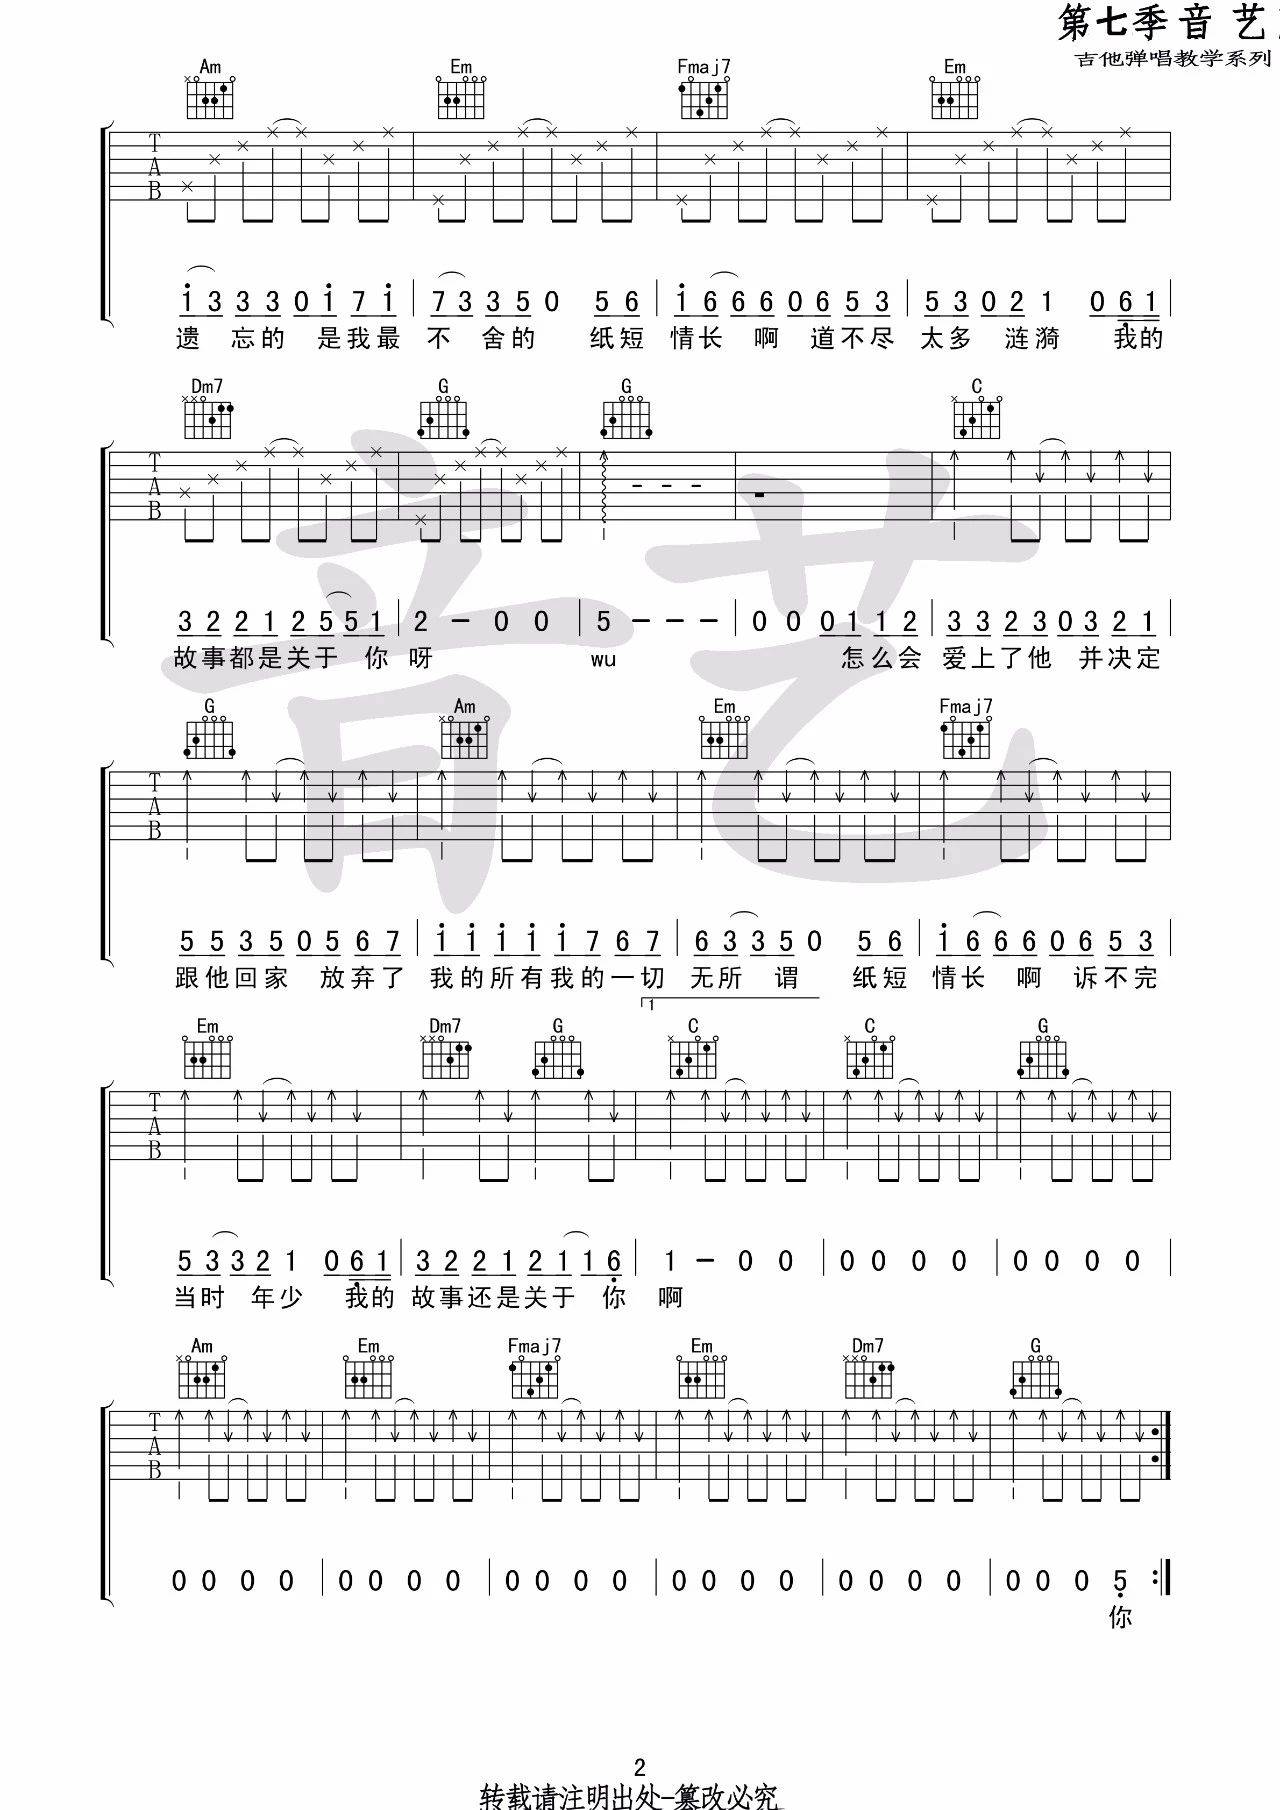 纸短情长简易版吉他谱 - 虫虫吉他谱免费下载 - 虫虫乐谱